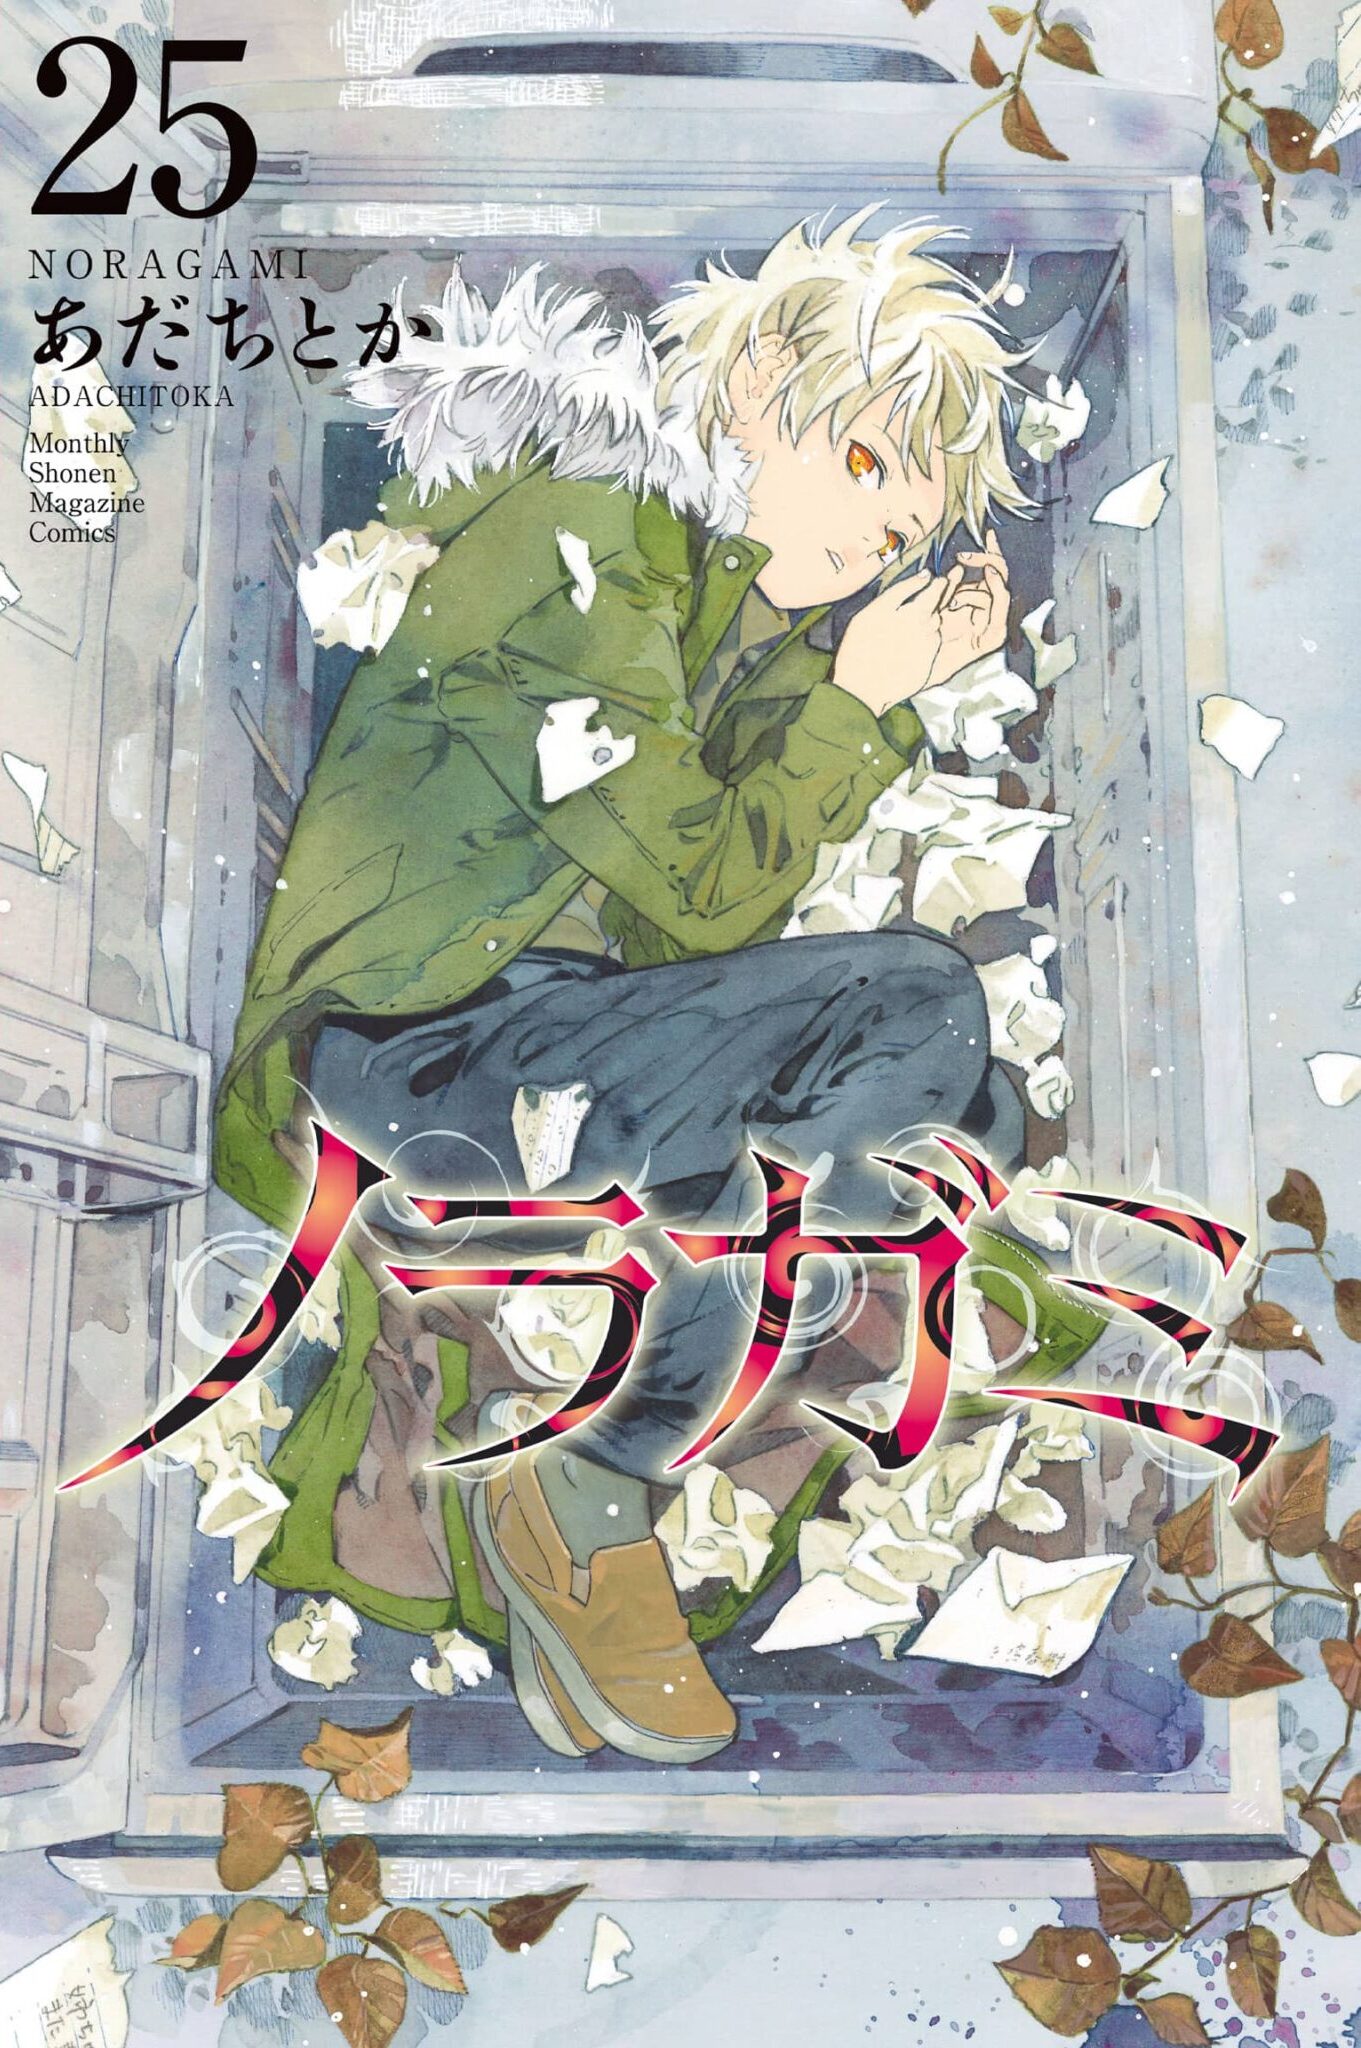 El manga Noragami revelo la portada de su volumen #25